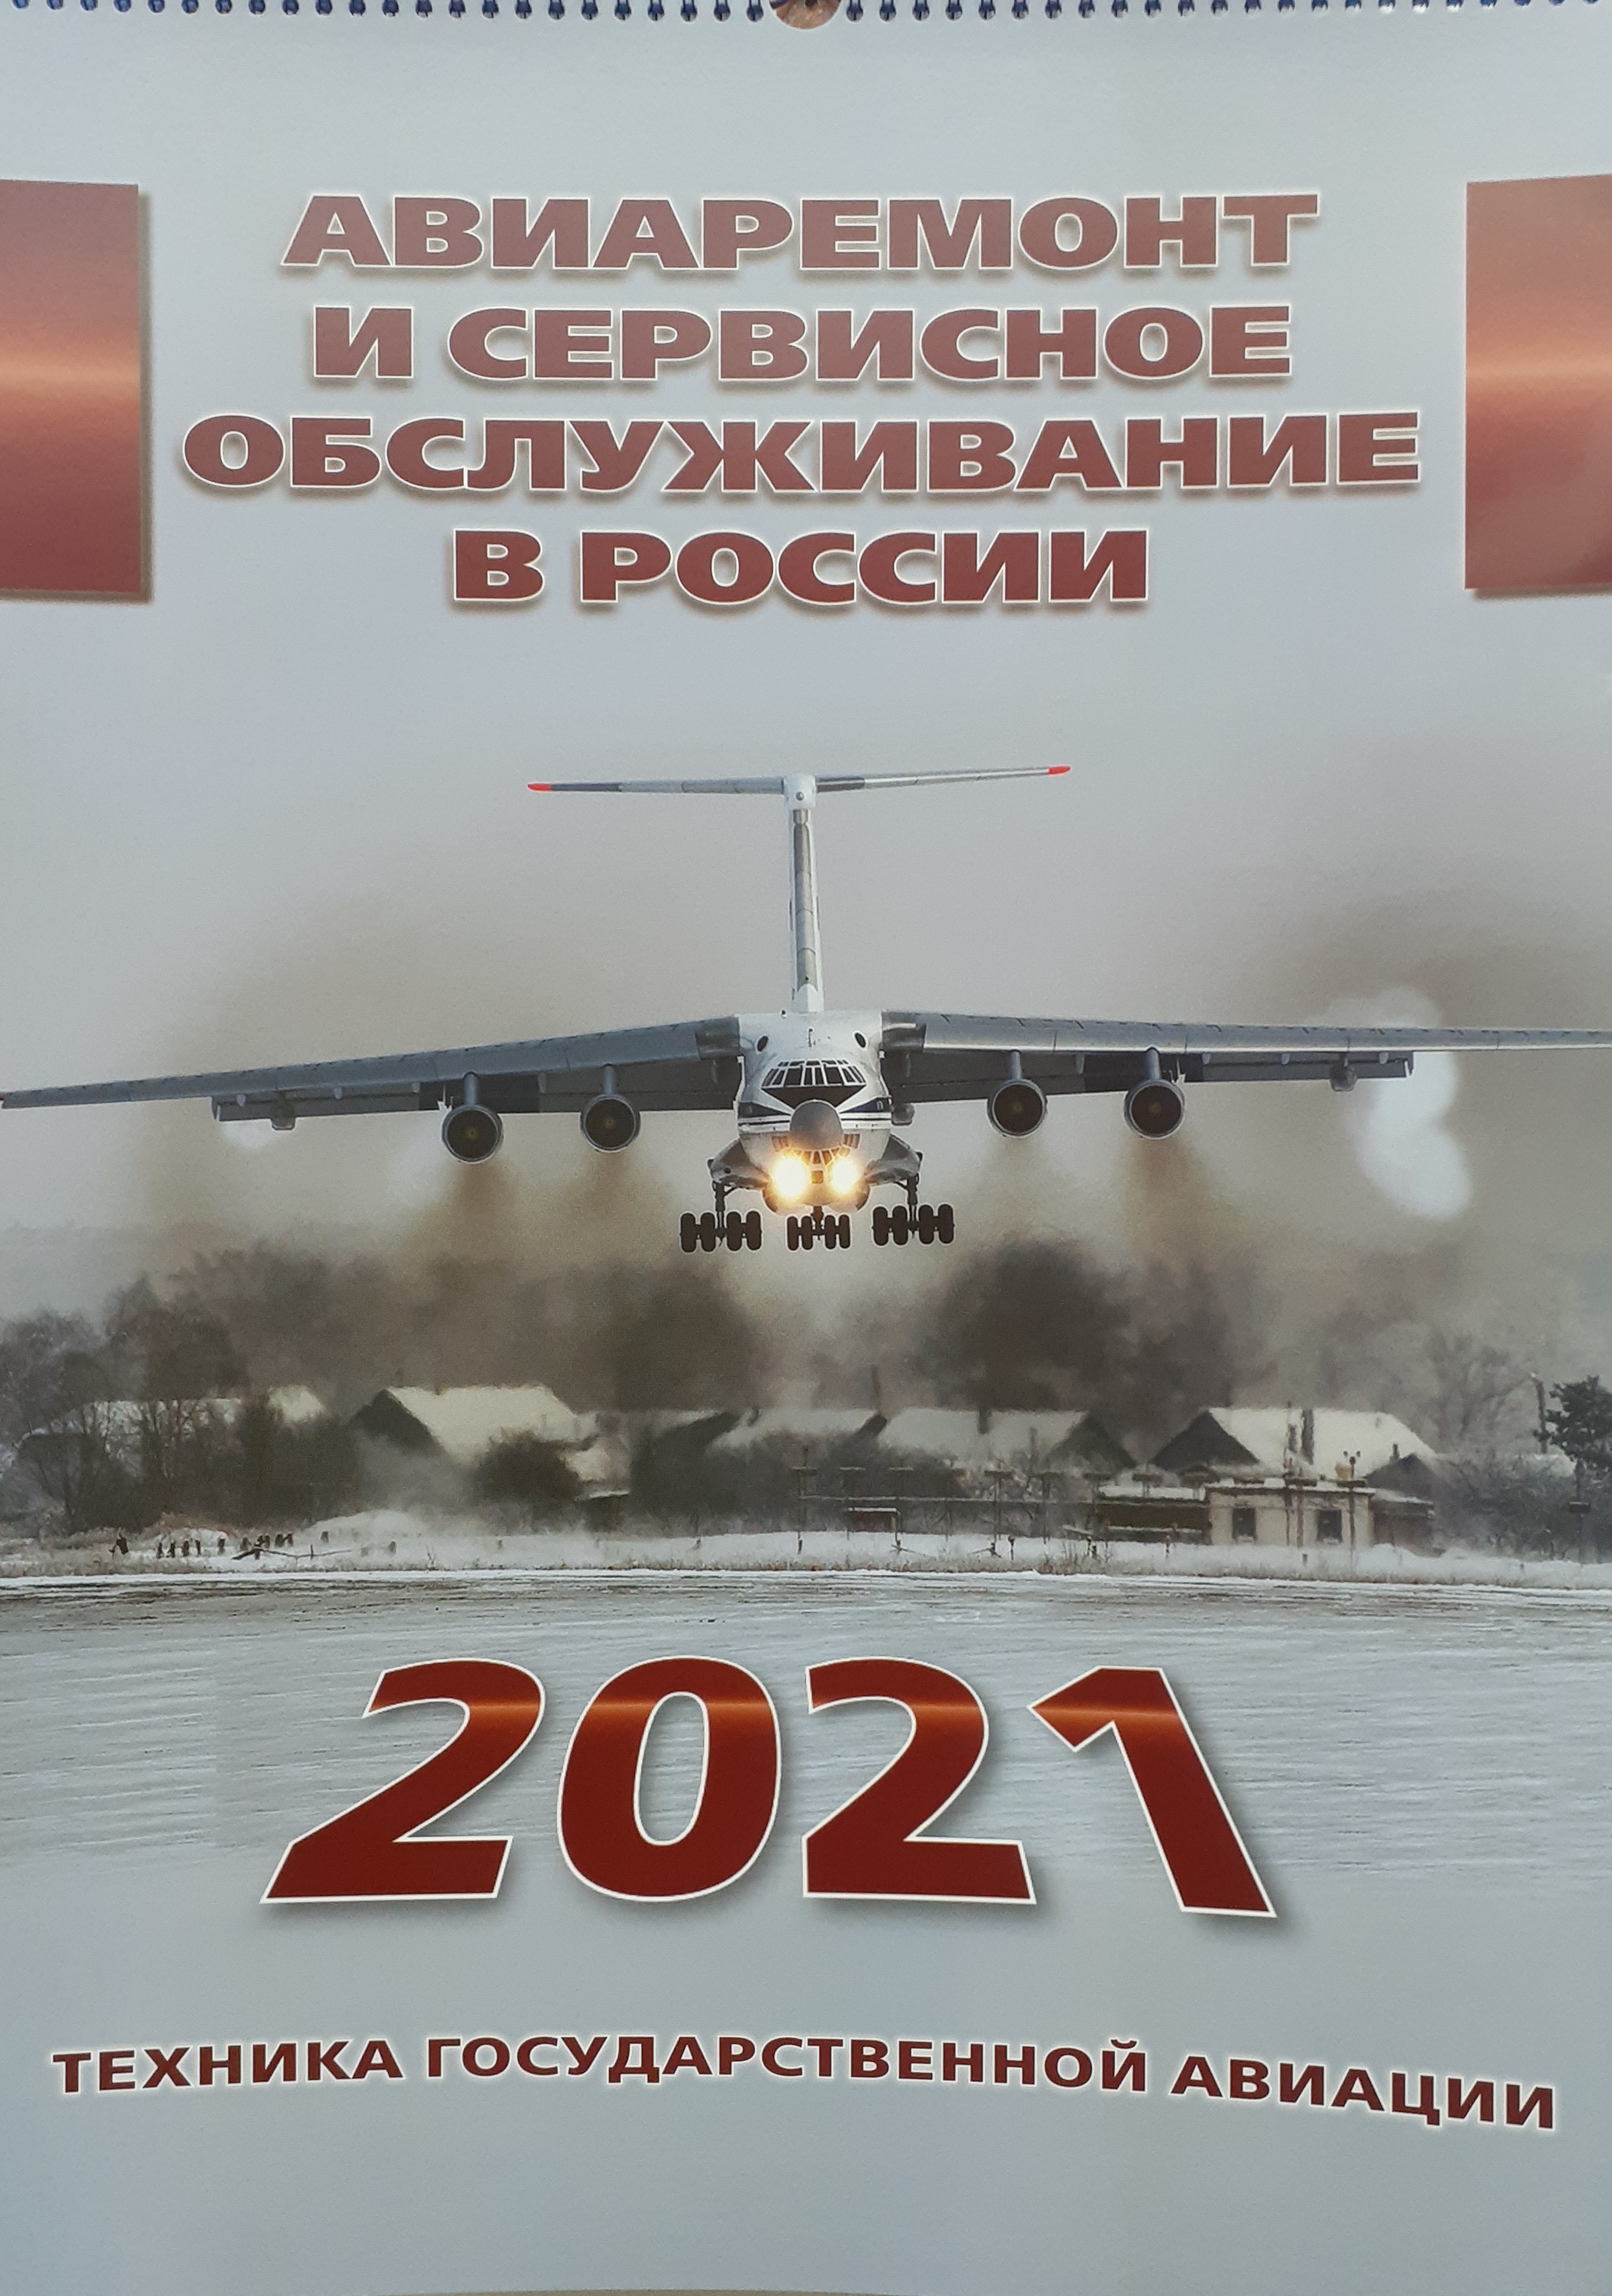 5142009  Календарь "Авиаремонт" на 2021 год